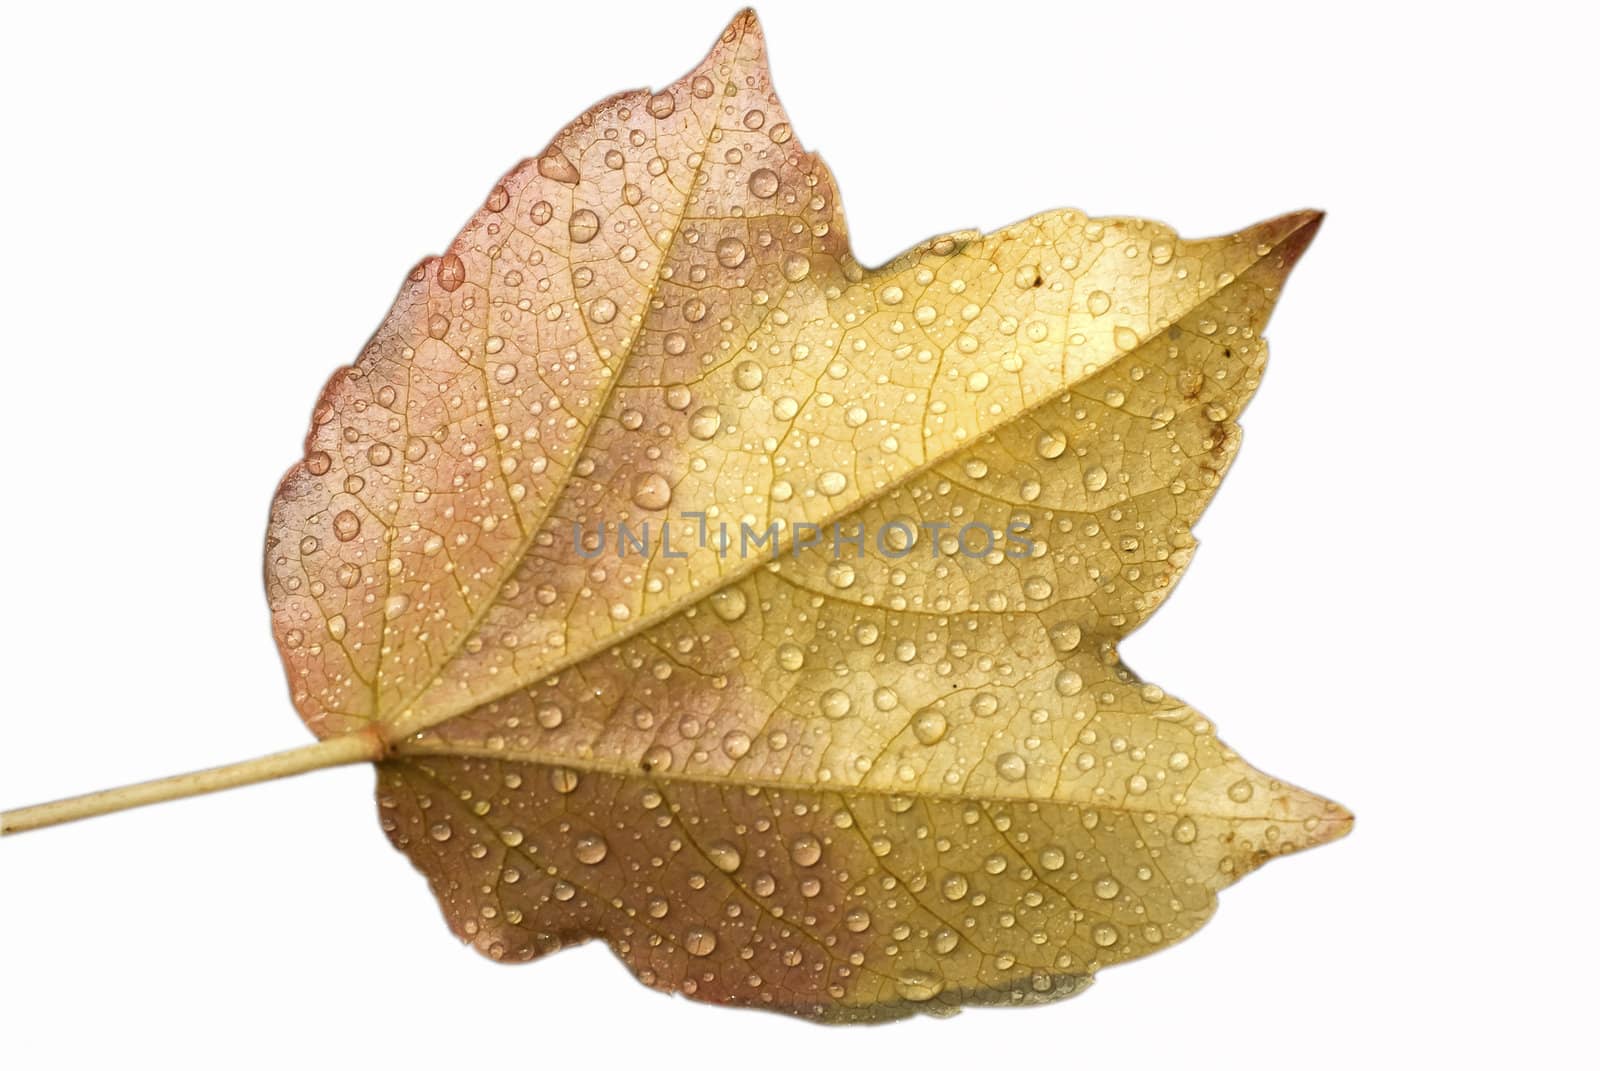 Wet autumn leaf by varbenov